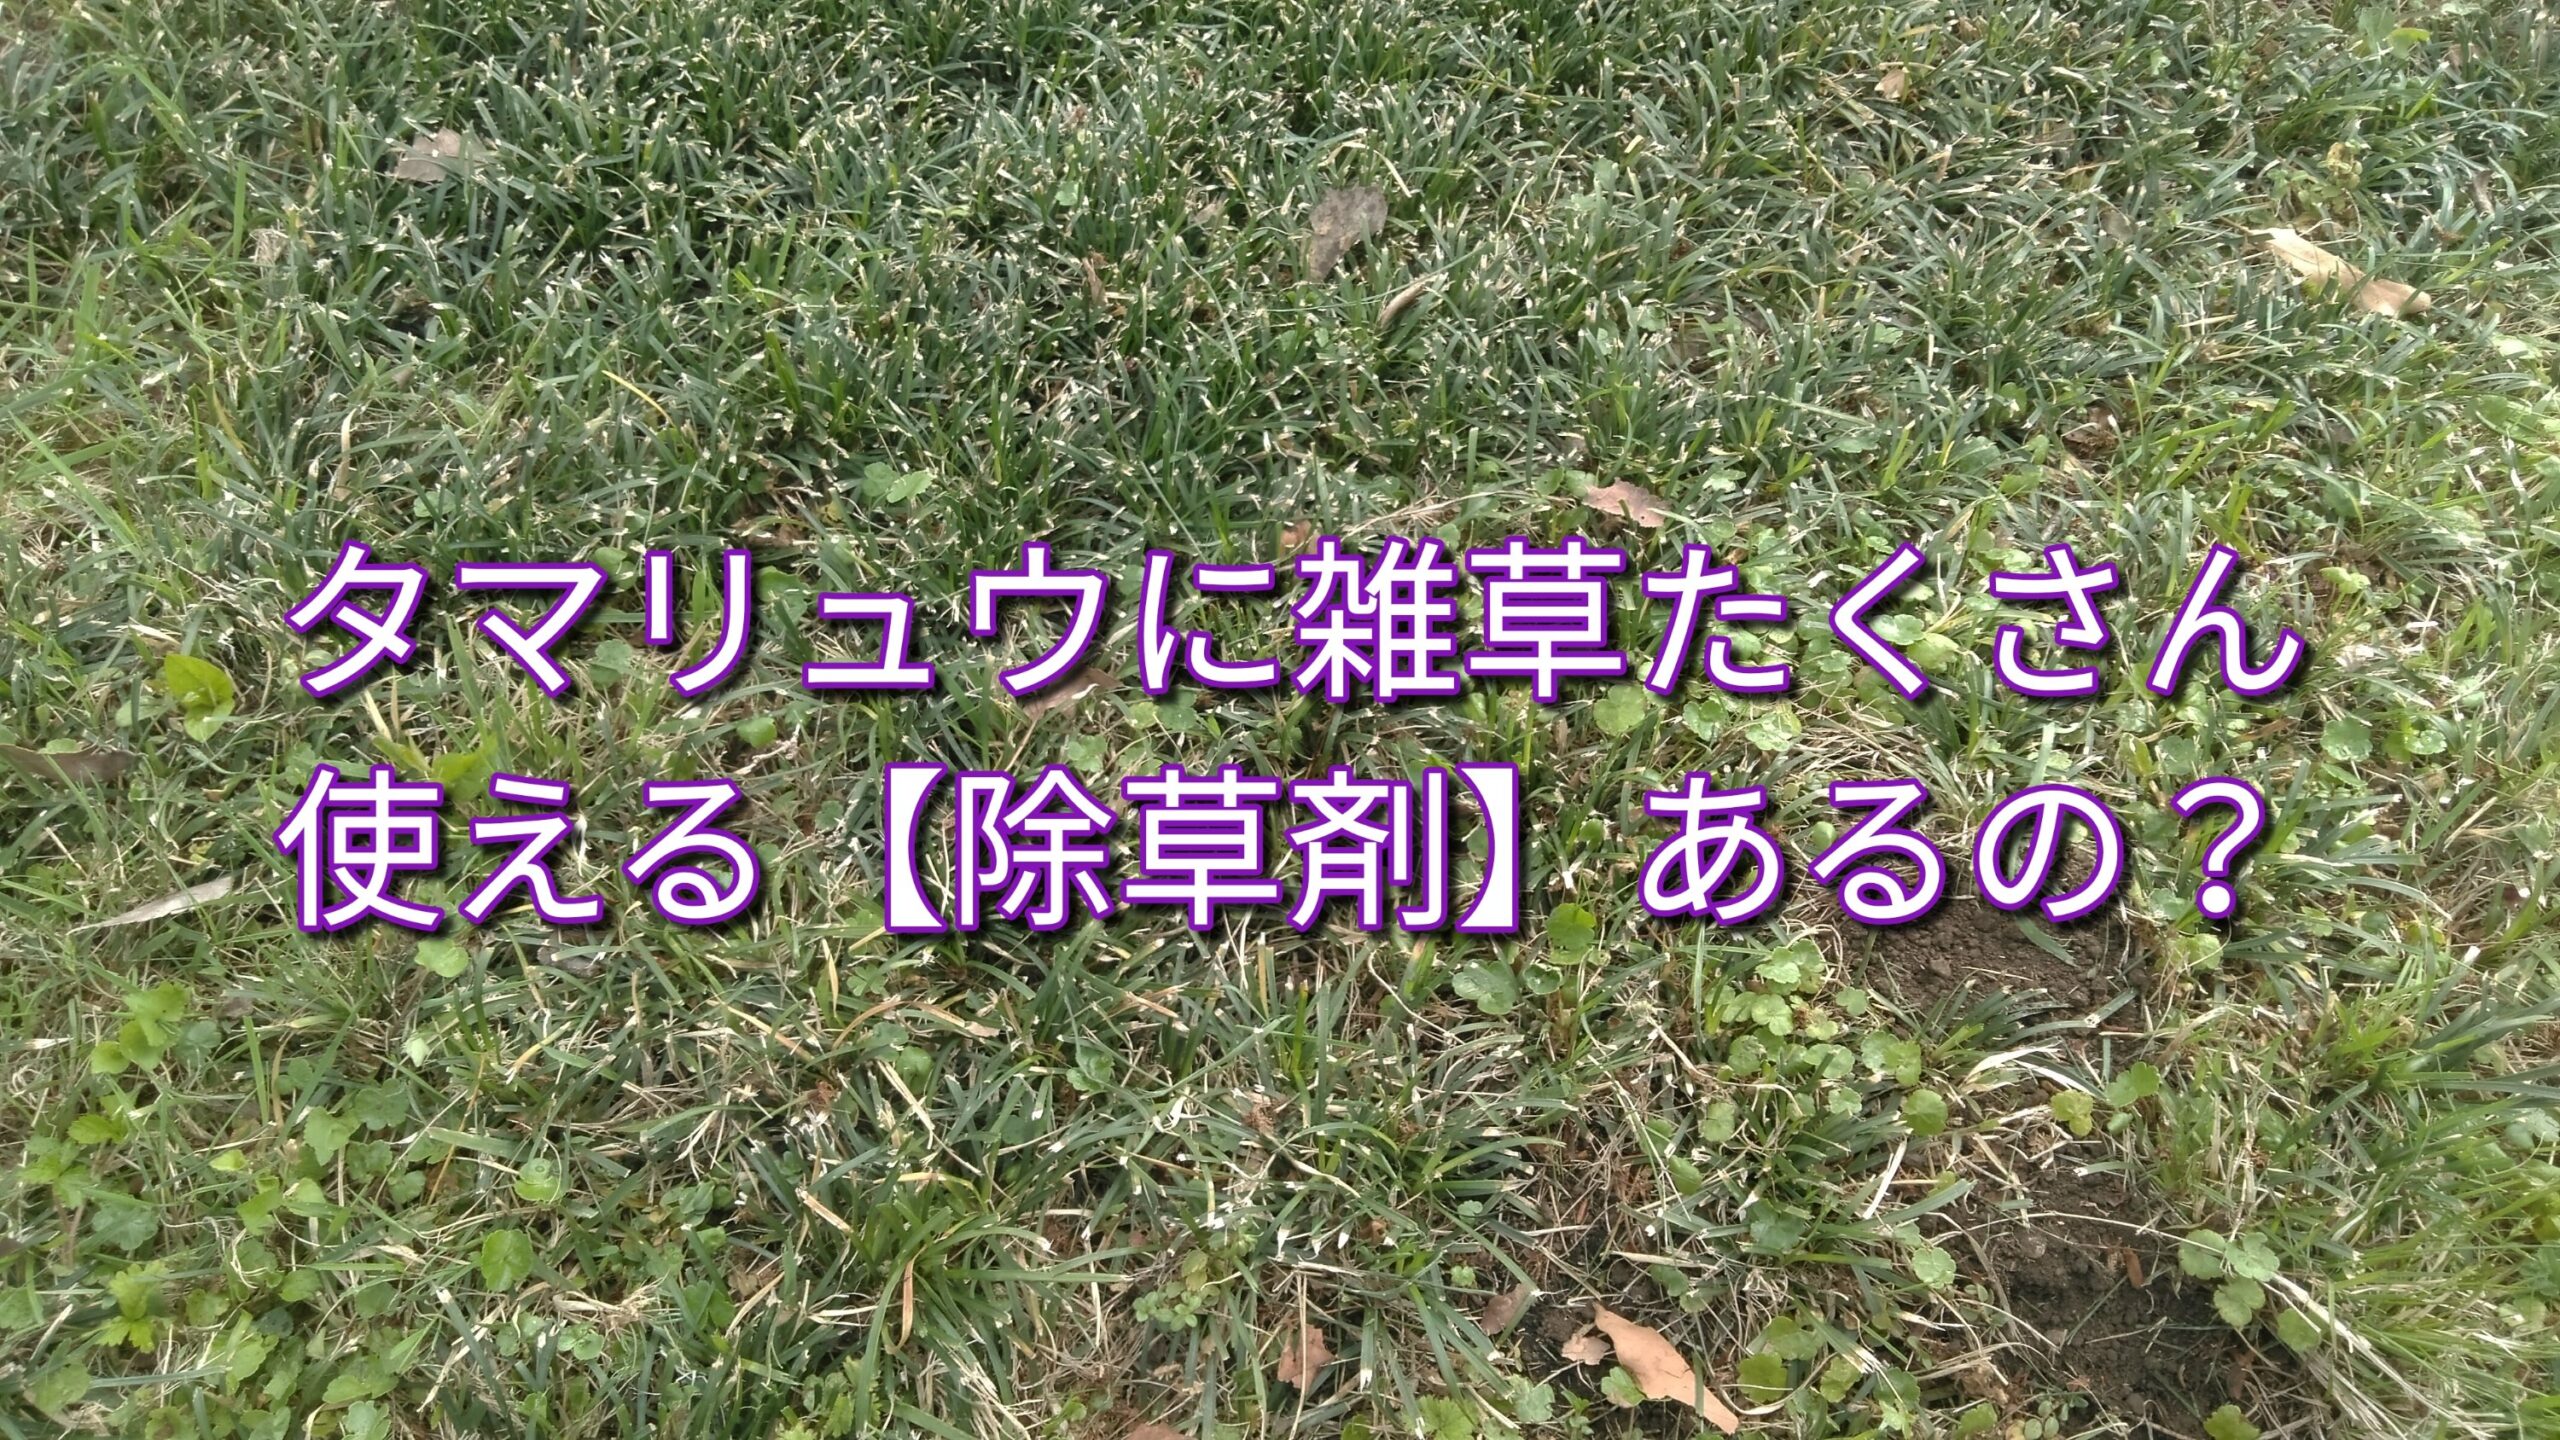 タマリュウに適用【除草剤実験】 ☆緑化機械メカニックの☆ブログ☆